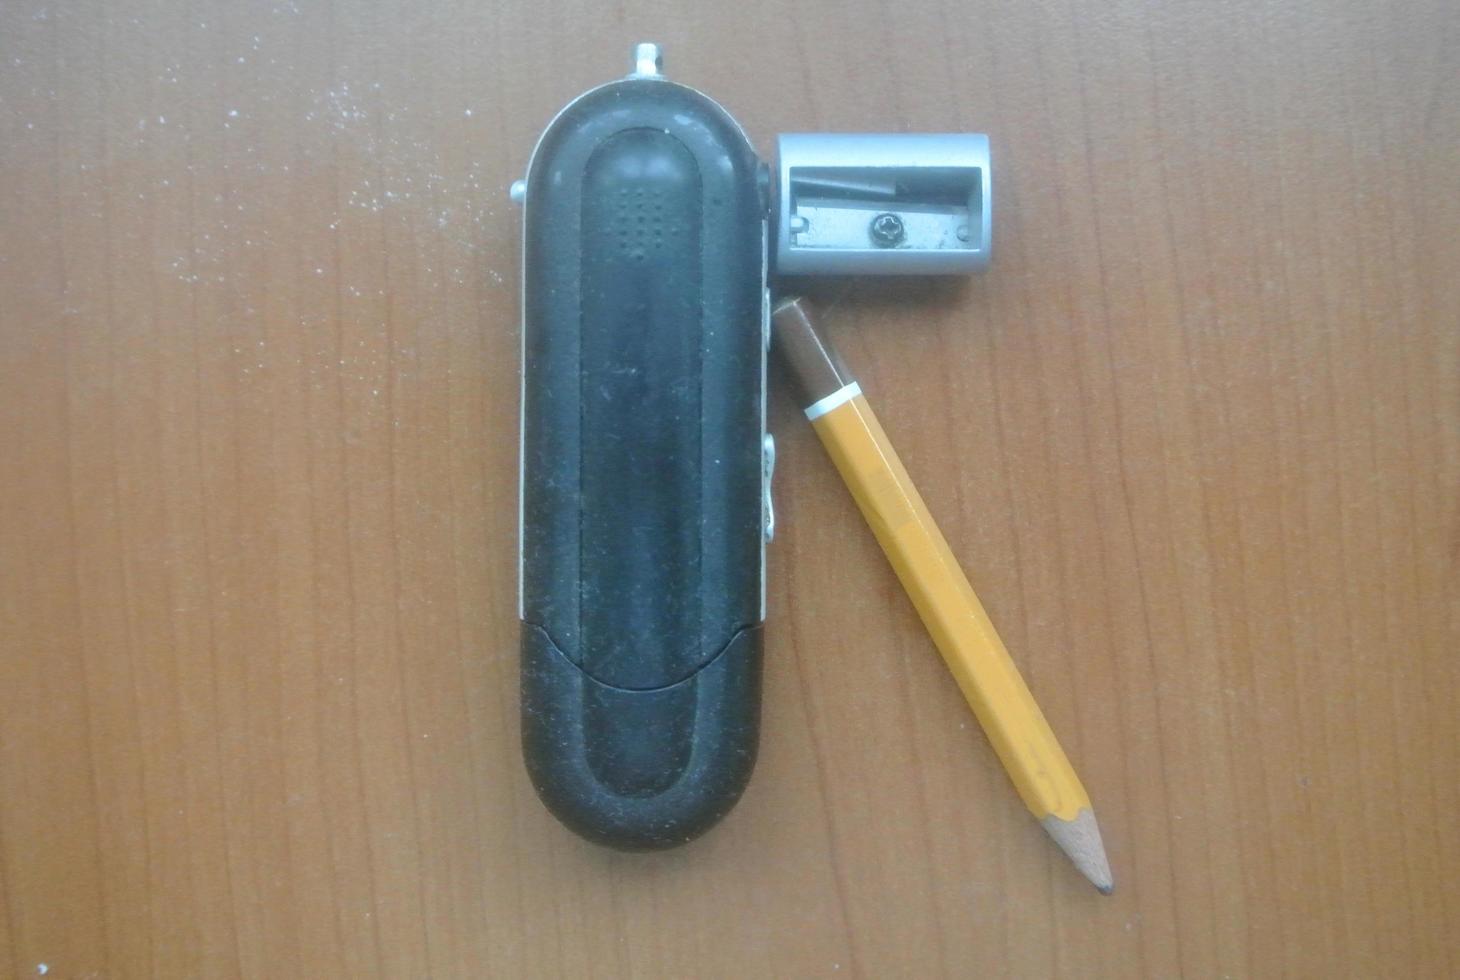 un crayon, une clé usb et un rasoir photo